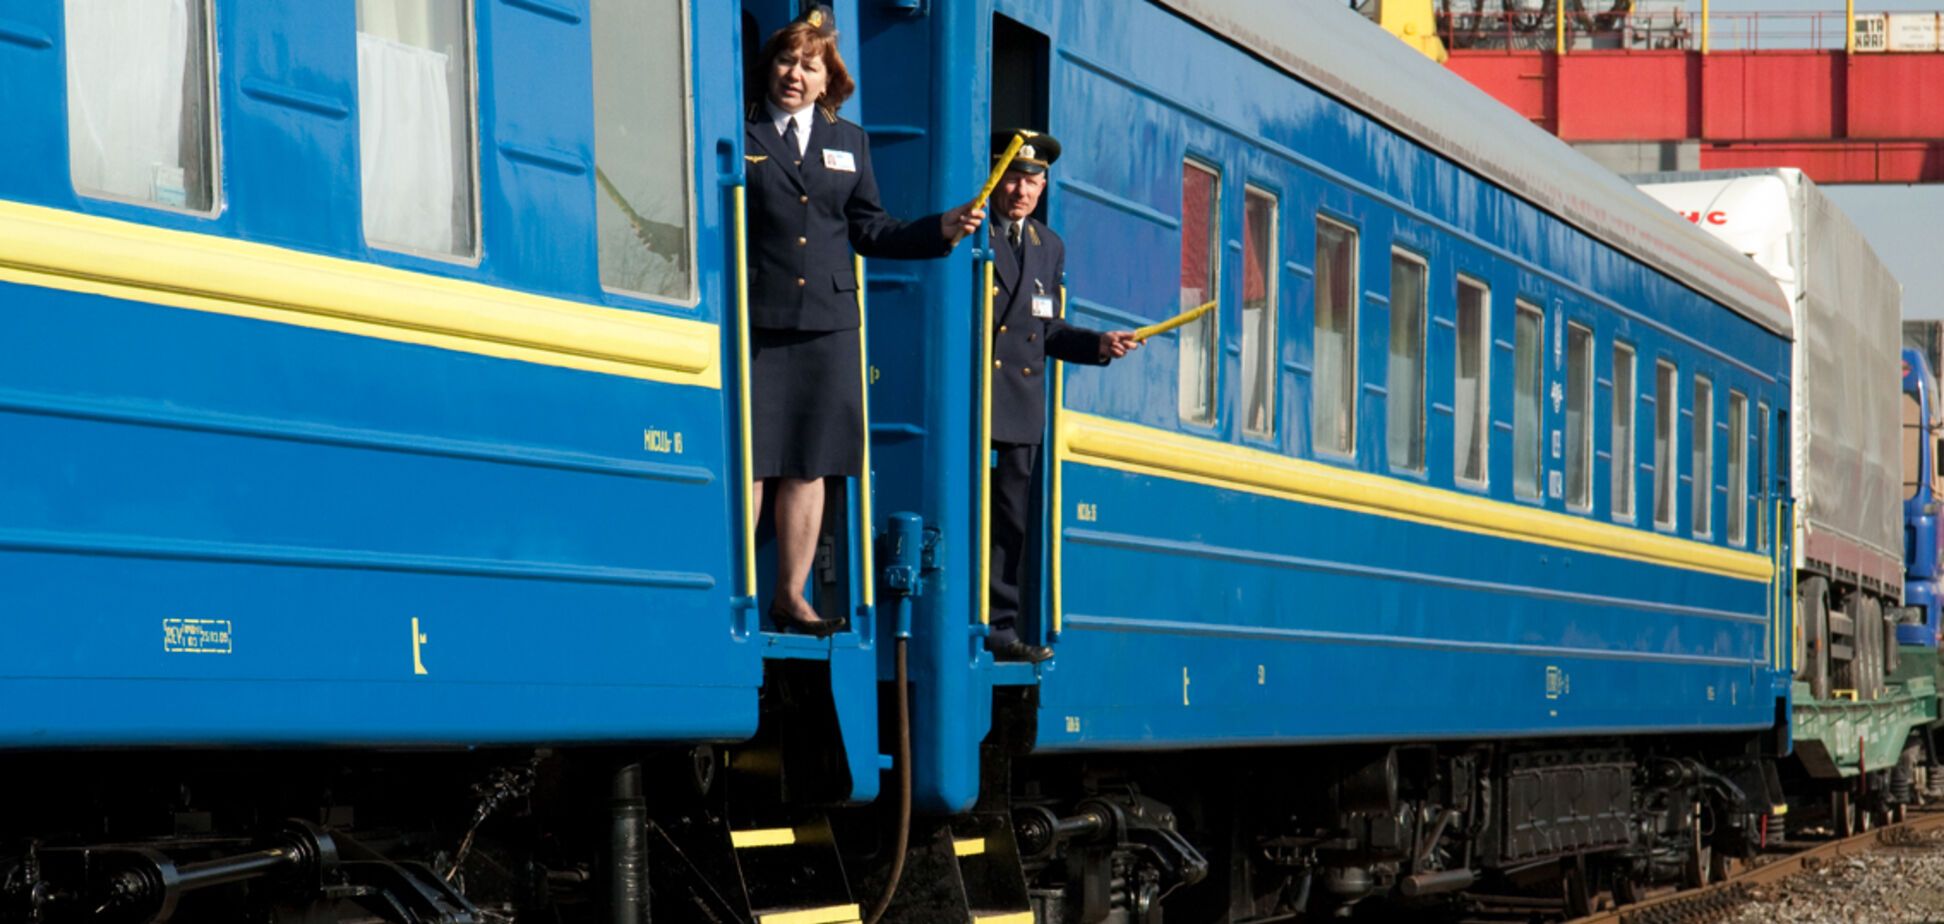 Едва не задохнулись, пропахли мочой: пассажиры поделились впечатлениями от поездов 'Укрзалізниці'